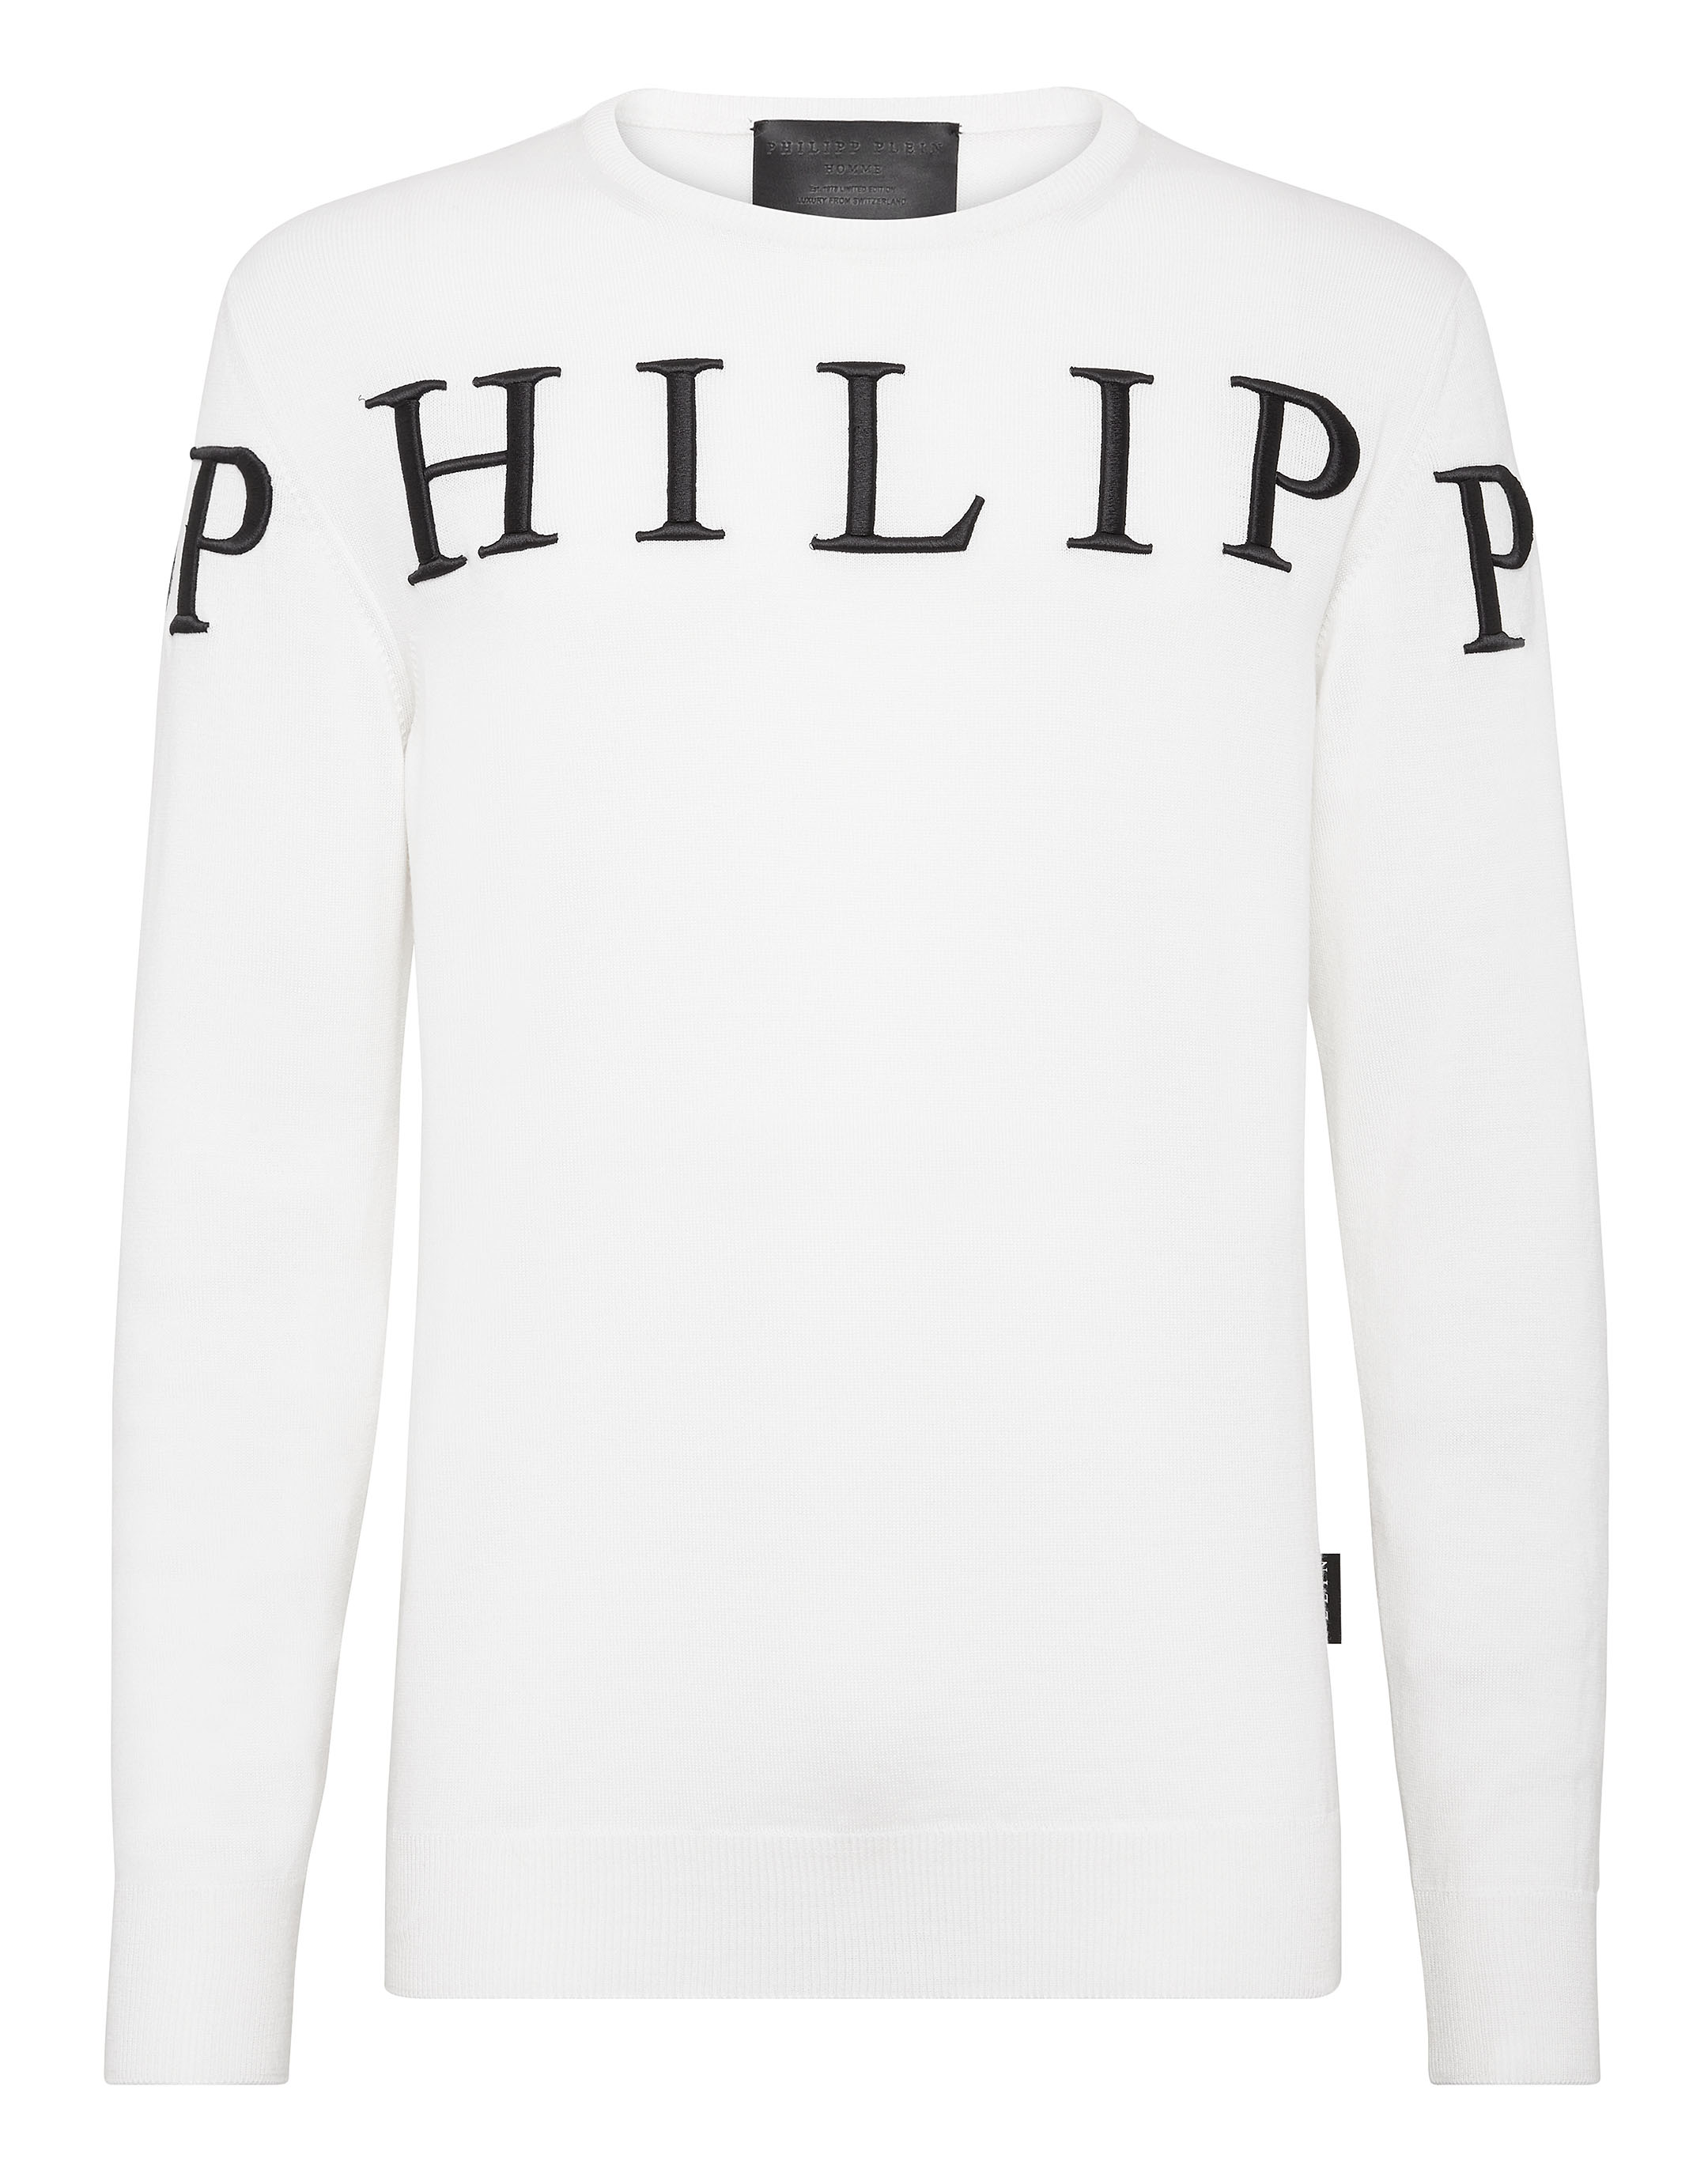 Pullover Round Neck LS Philipp Plein TM | Philipp Plein Outlet